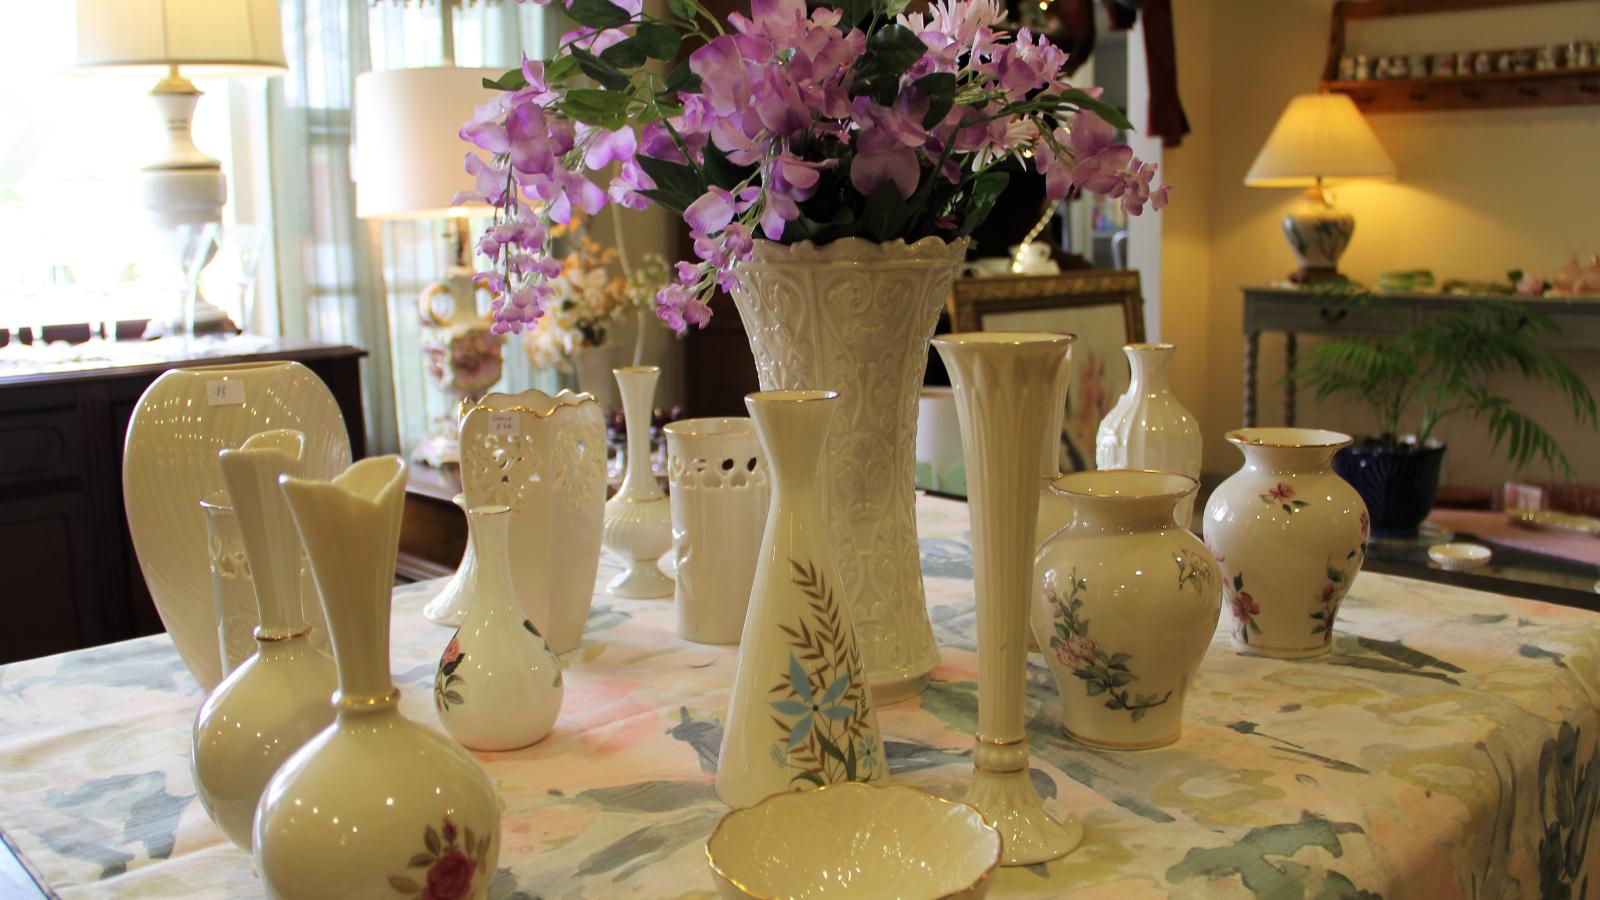 Lenox Vases on display at Yesterdays Treasures